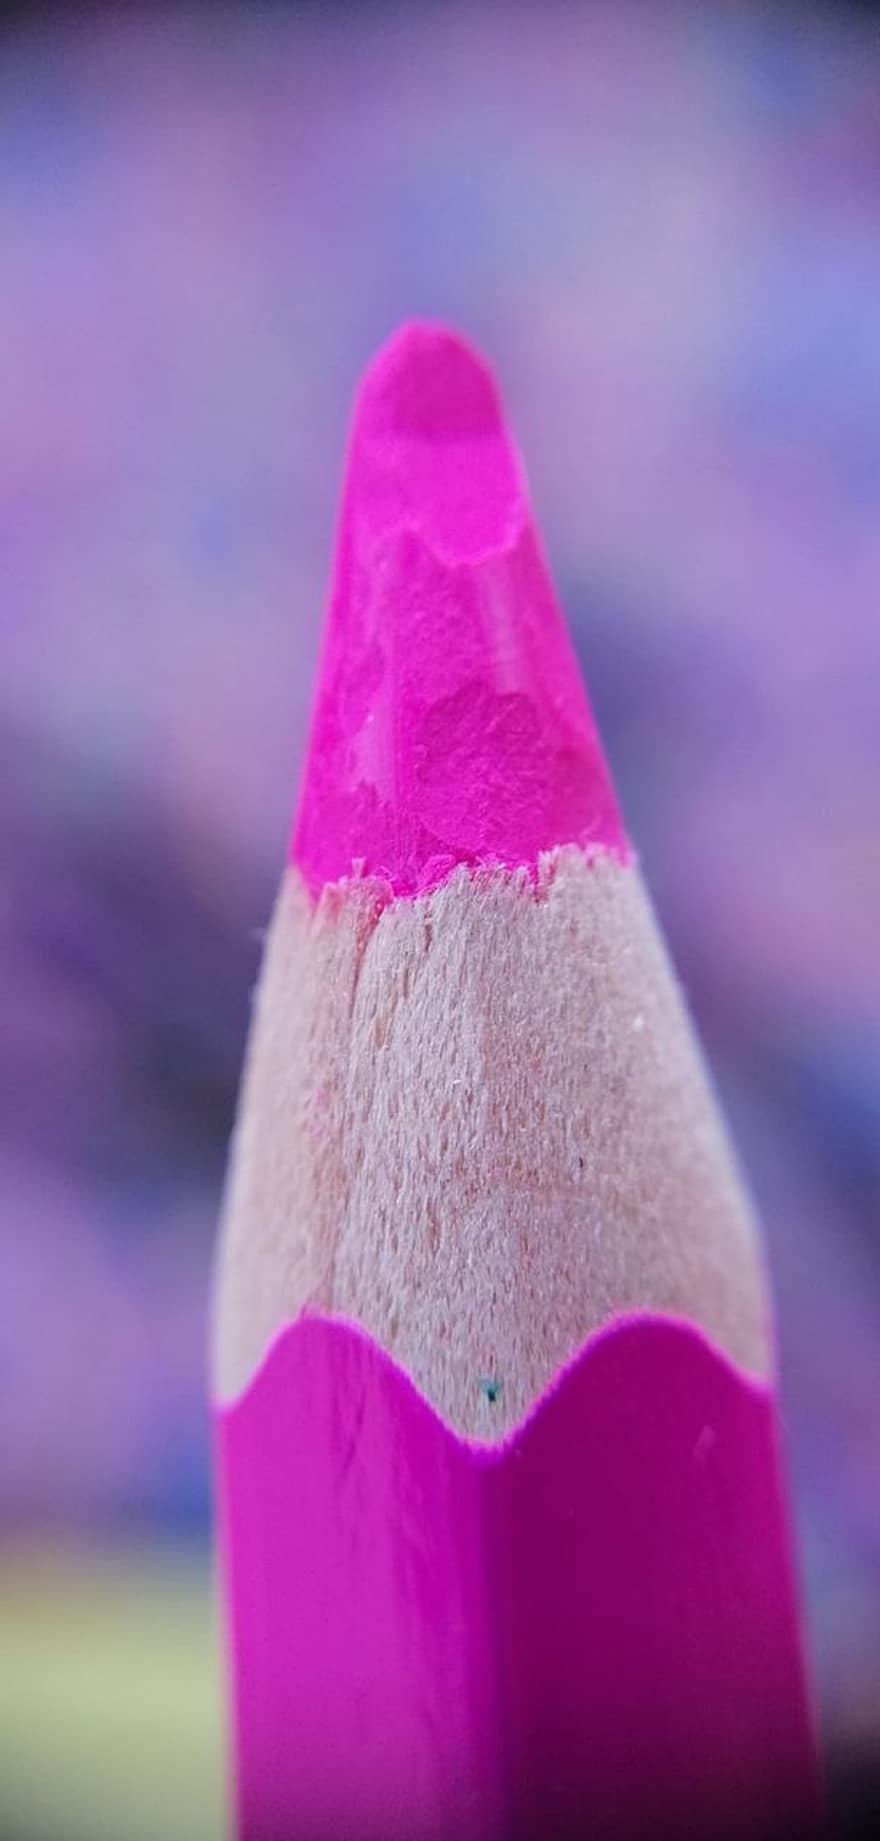 kolorowy ołówek, Różowy ołówek, Różowy kolorowy ołówek, różowy, sztuka i rzemiosło, przybory do sztuki, materiał barwiący, kolorowanie, fotografia makro, bokeh